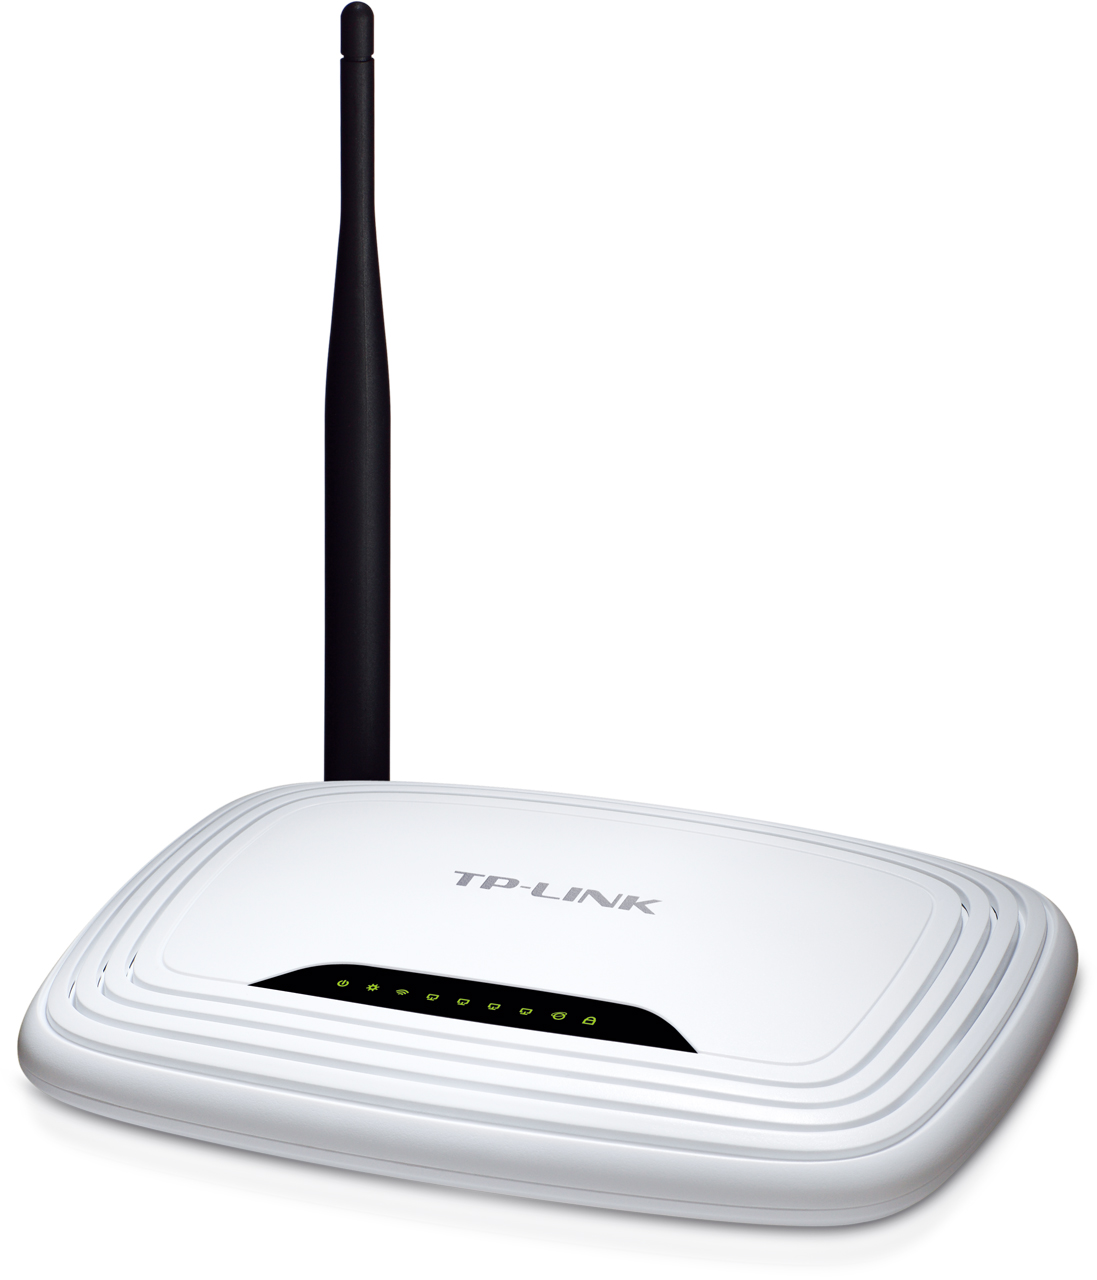 Un modem arnet, Un router TP Link 1 sola red